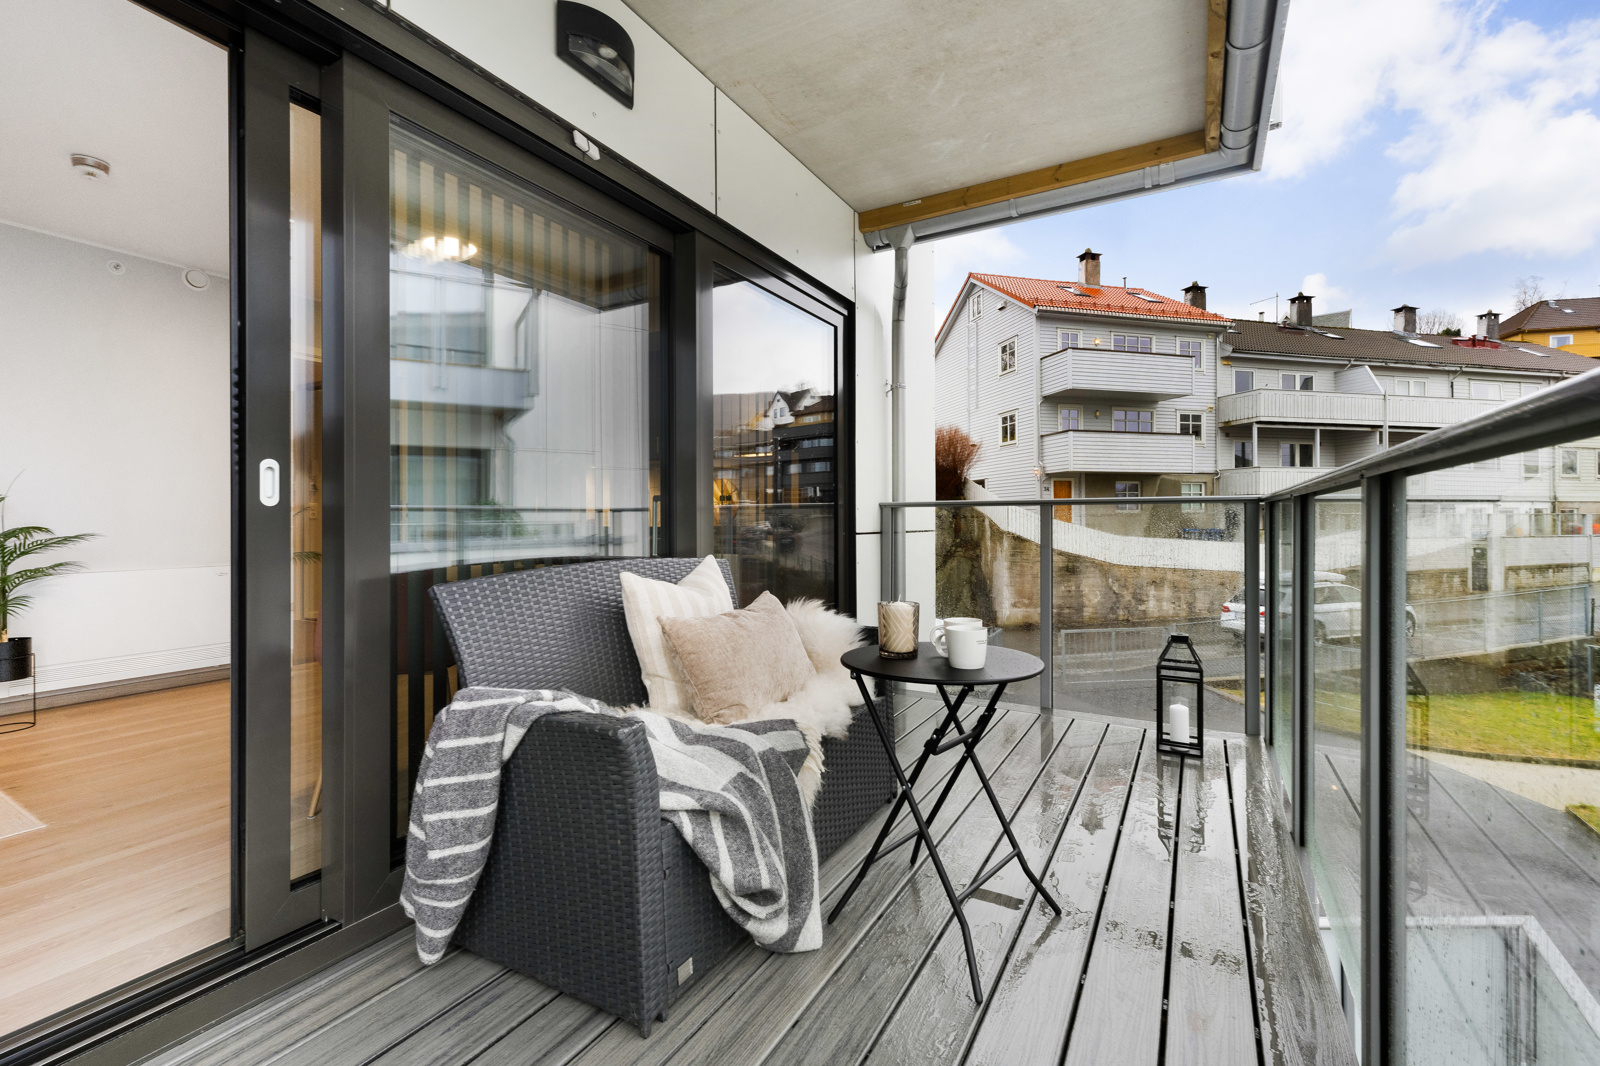 Velkommen til Svaneviksveien 59 - en nydelig leilighet med lekkert bad og kjøkken, balkong og nærhet til "alt" ! 